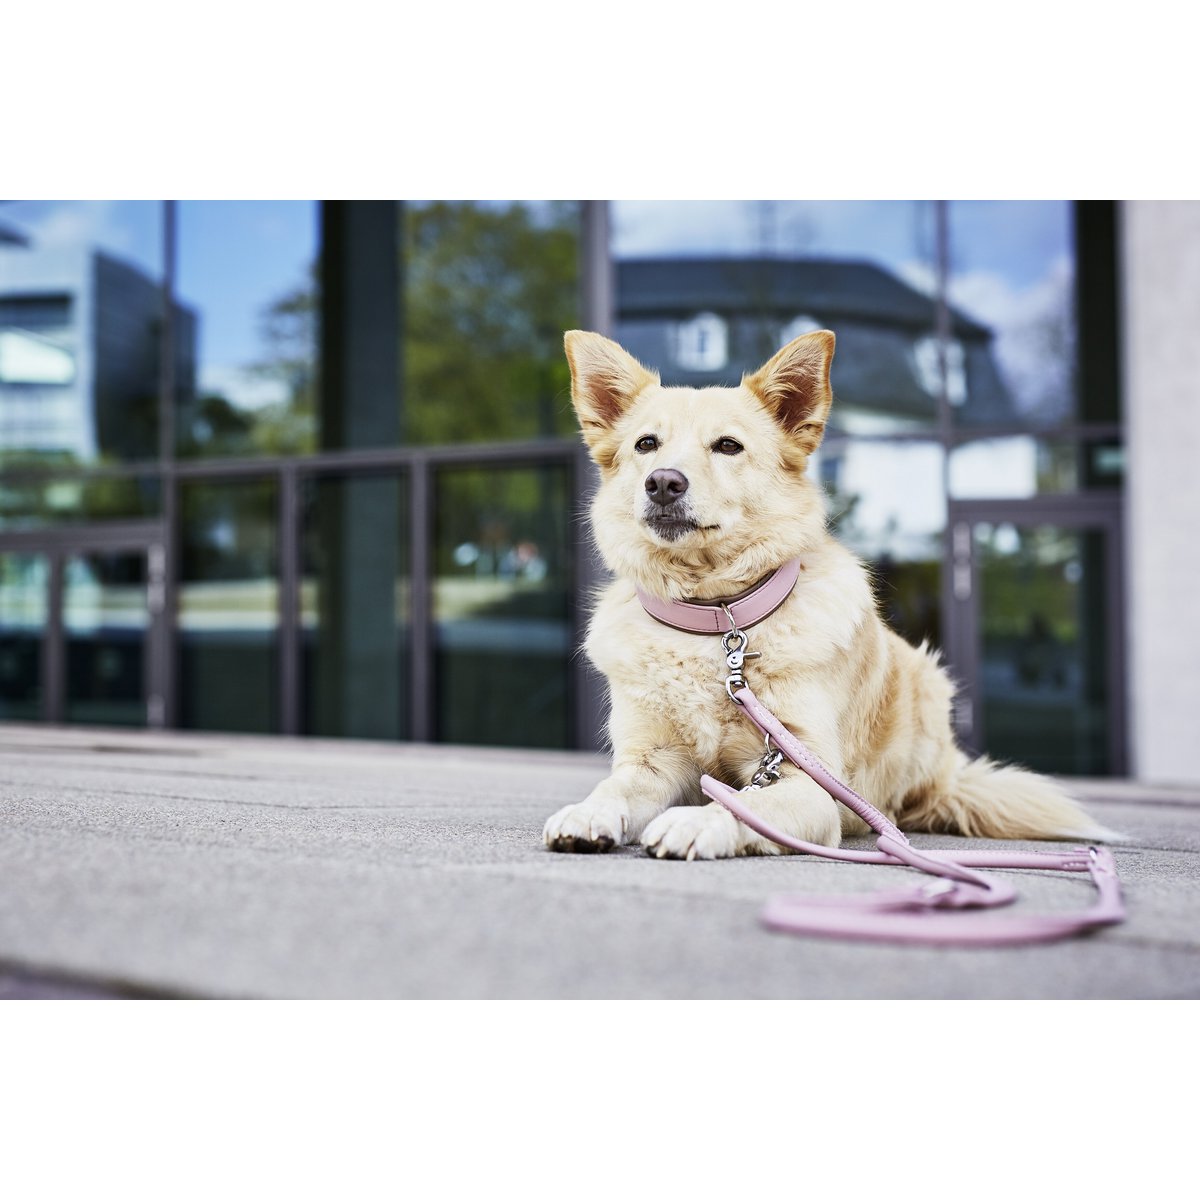 AMICI Hondenriem Rose
De AMICI-collectie biedt een scala aan hondenriemen en halsbanden van hoogwaardig nappaleder, waardoor ze comfortabel en duurzaam zijn voor zowel mens als dier. MetLABONIwafwafAMICI Hondenriem Rose